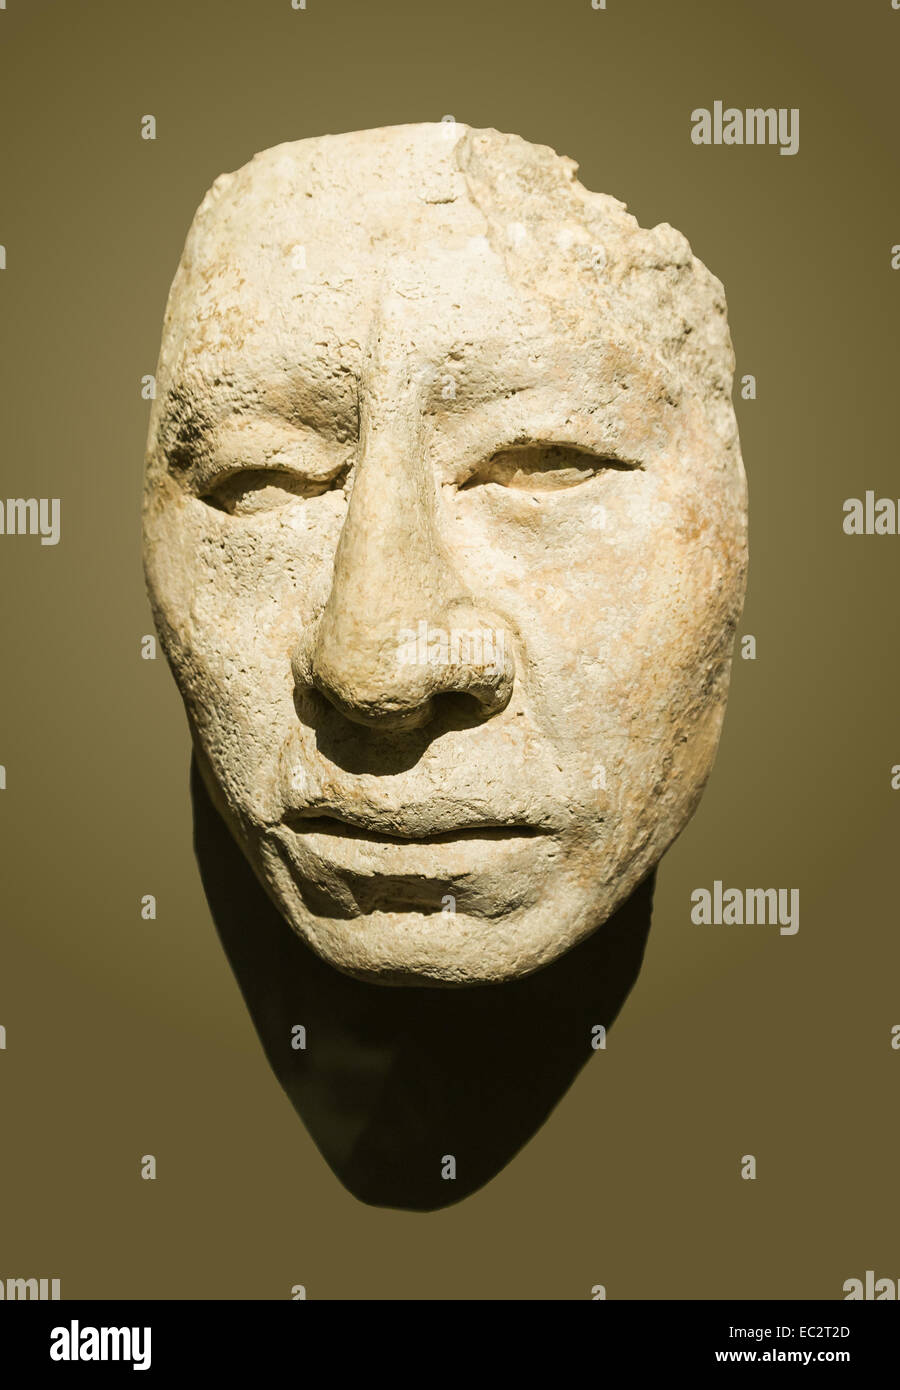 Skulptur eines Maya-Gesichts. Stuck. Klassiker-jüngste Ära (600-900 C.E.). In Palenque gefunden. Aus dem Nationalmuseum für Anthropologie von Mexiko. Auf dem Display in einer temporären Ausstellung "Mayas" am Musée du Quai Branly, Paris. Stockfoto